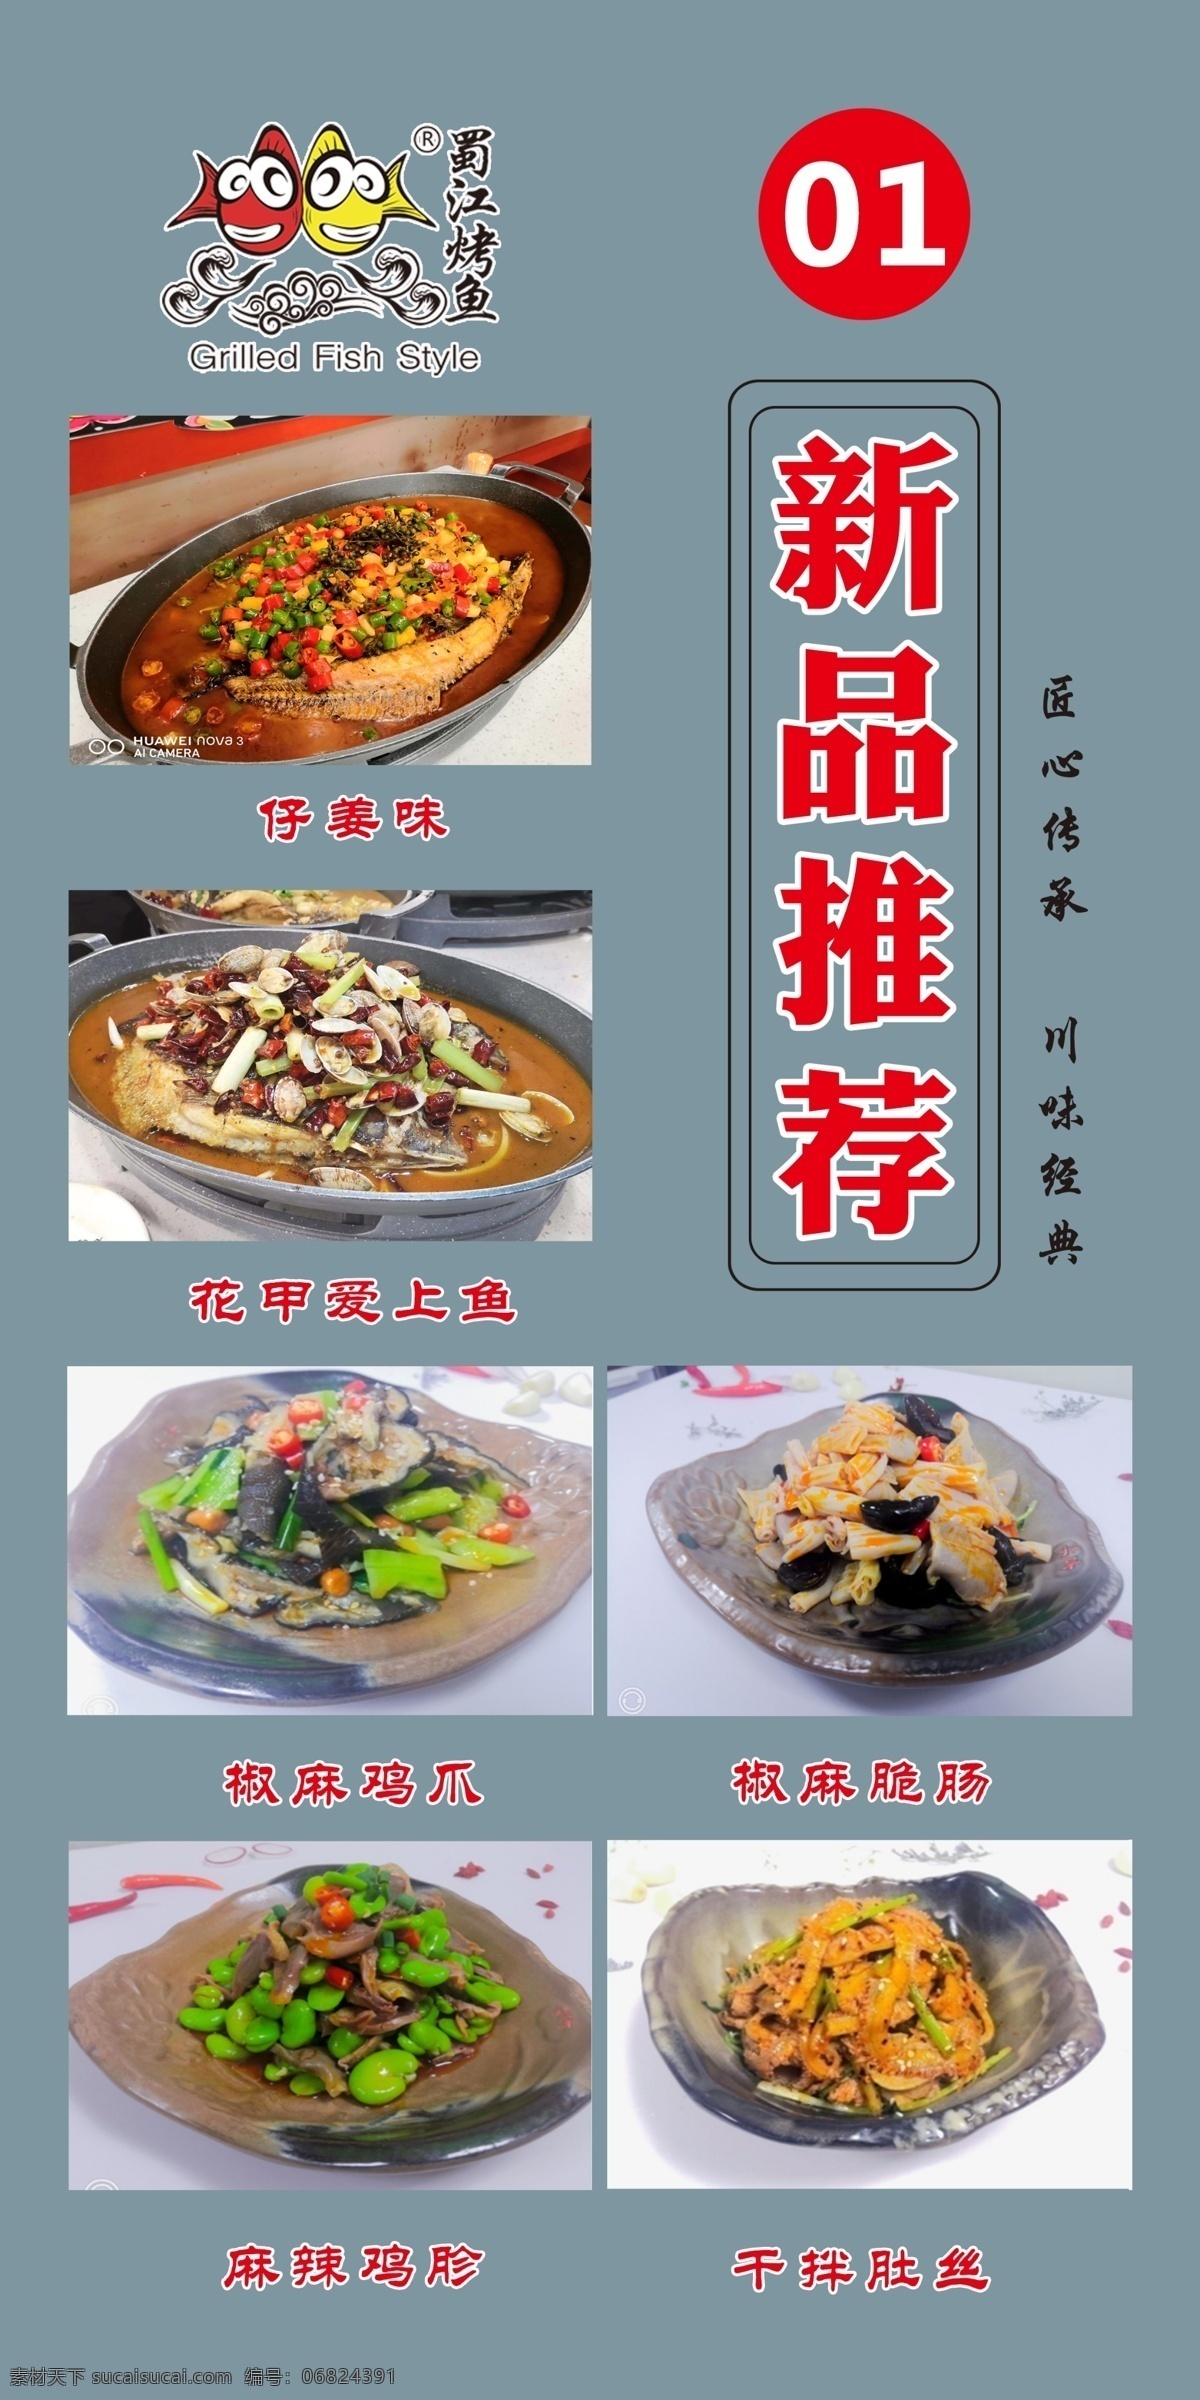 蜀江烤鱼台卡 蜀江烤鱼 菜品推荐 烤鱼 菜单